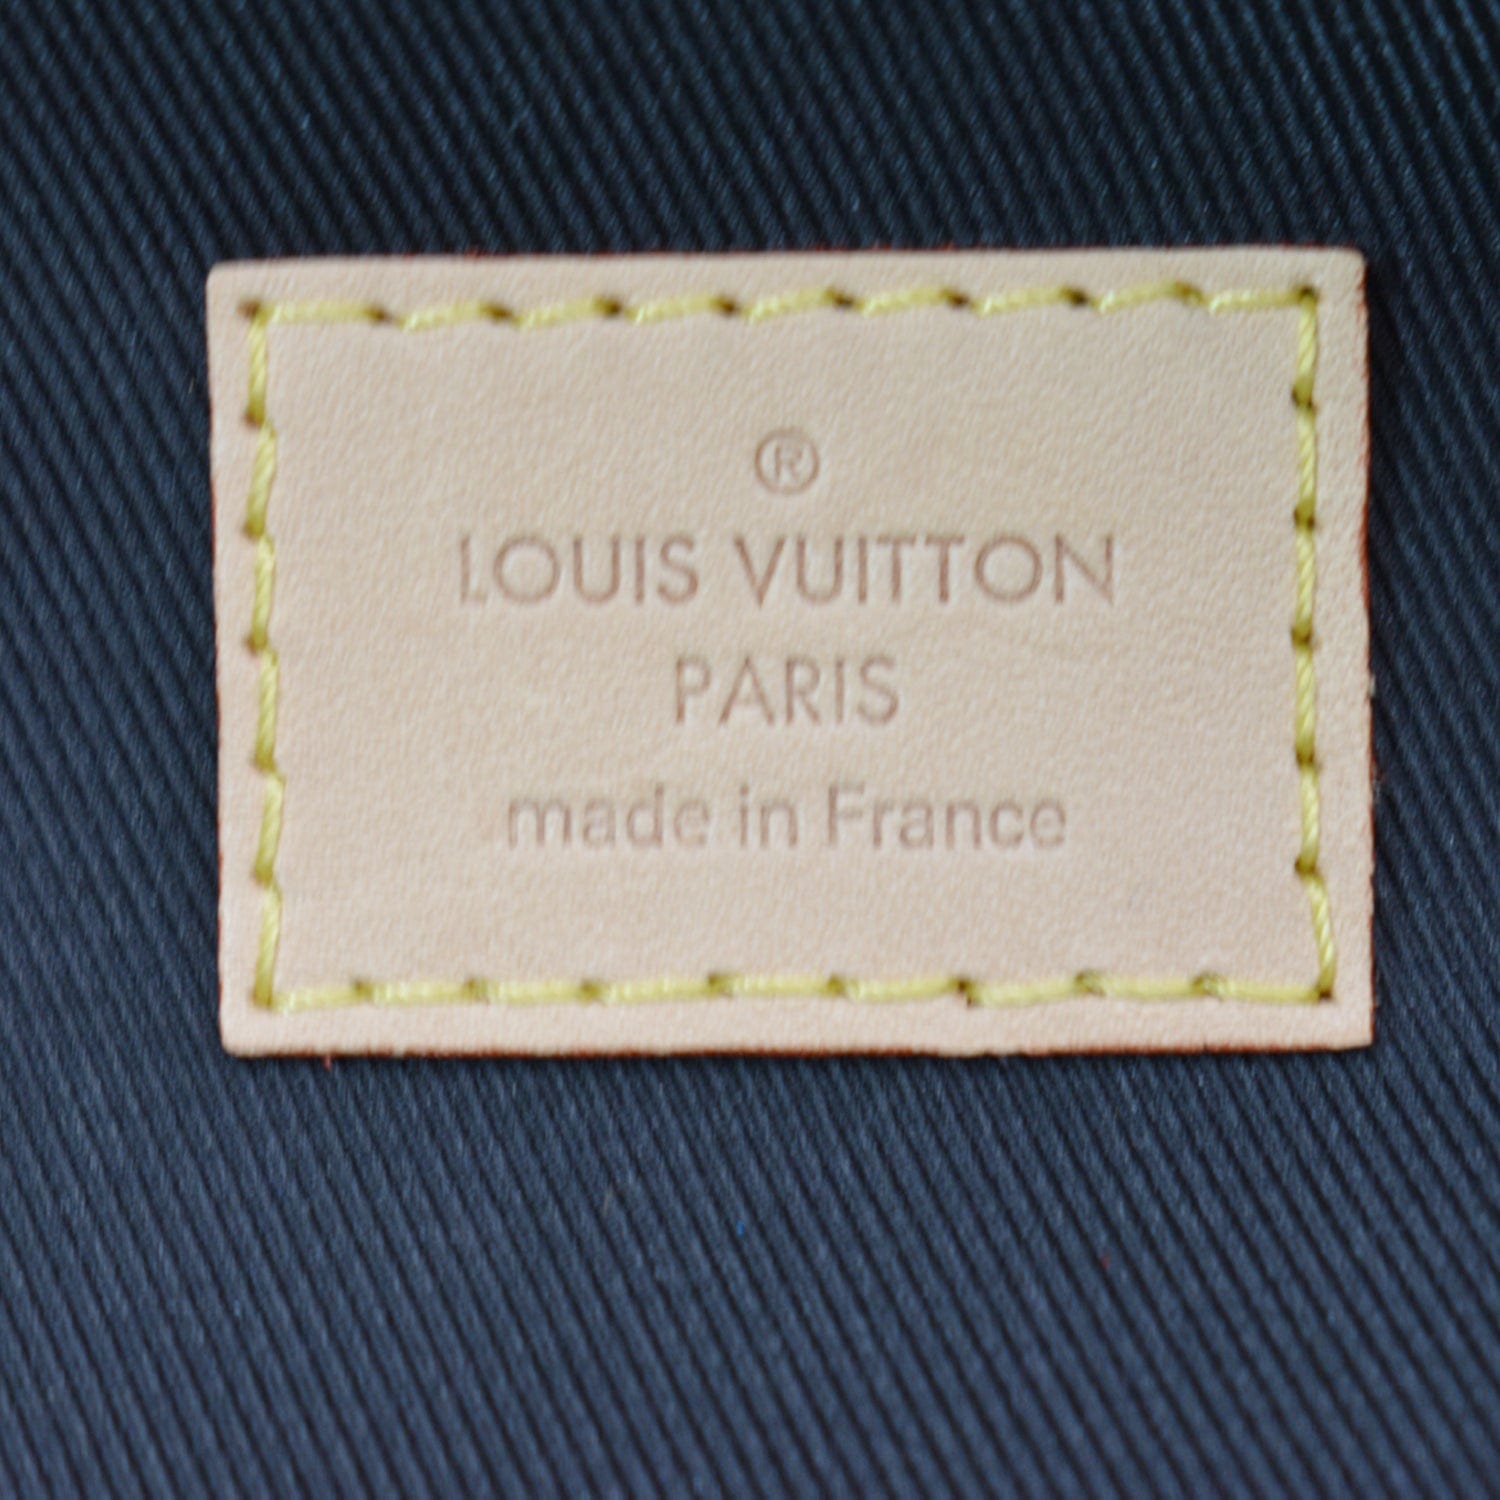 Louis Vuitton LVxLOL Monogram League of Legends Bumbag 817lv38